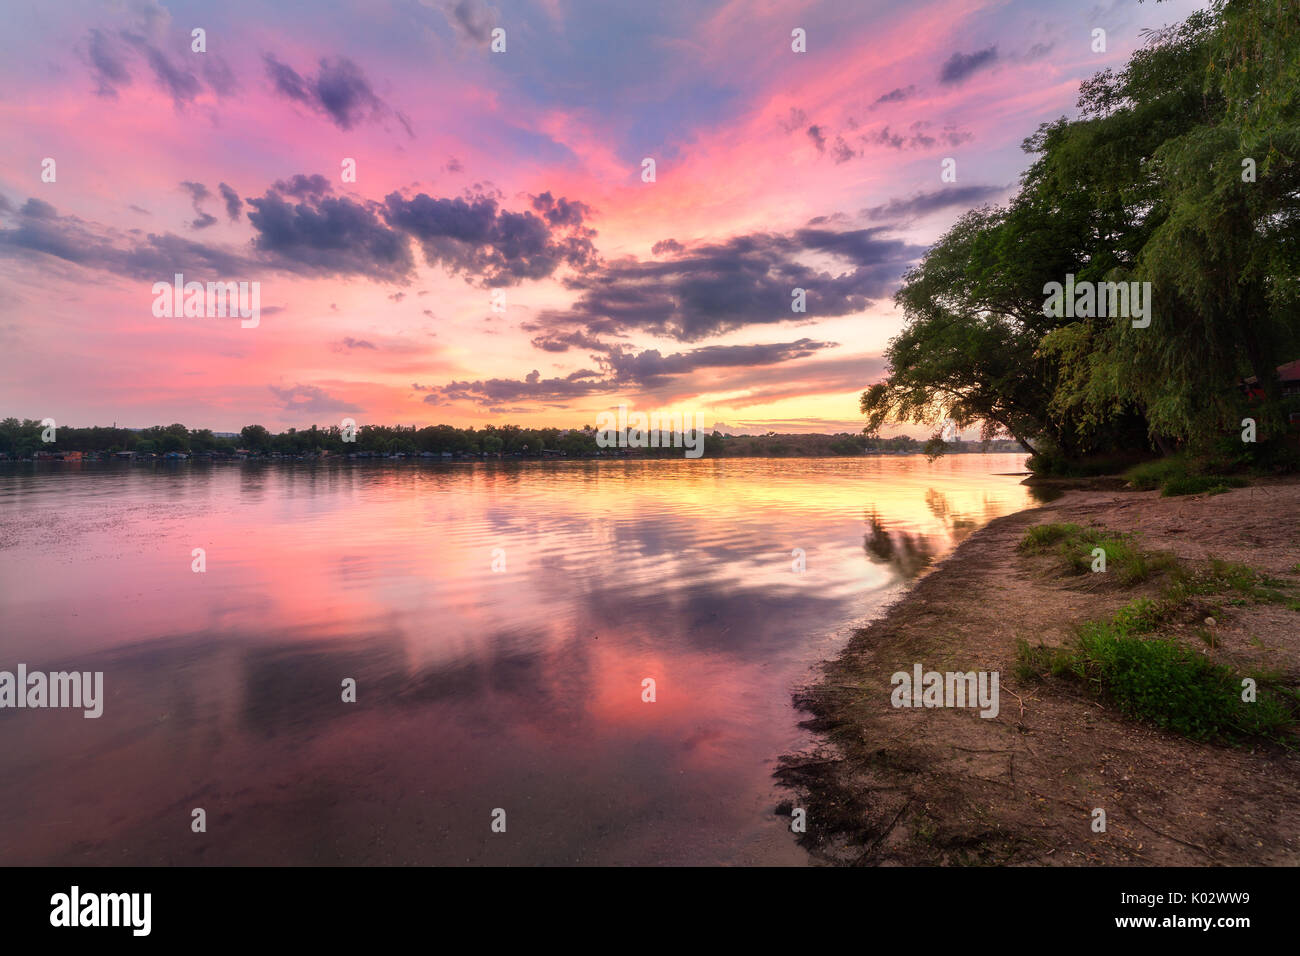 Tranquillo paesaggio con fiume e colorato il cielo con le nuvole al tramonto. Un paesaggio fantastico con il lago, spiaggia, red sky con multicolore nuvole riflettono in wa Foto Stock